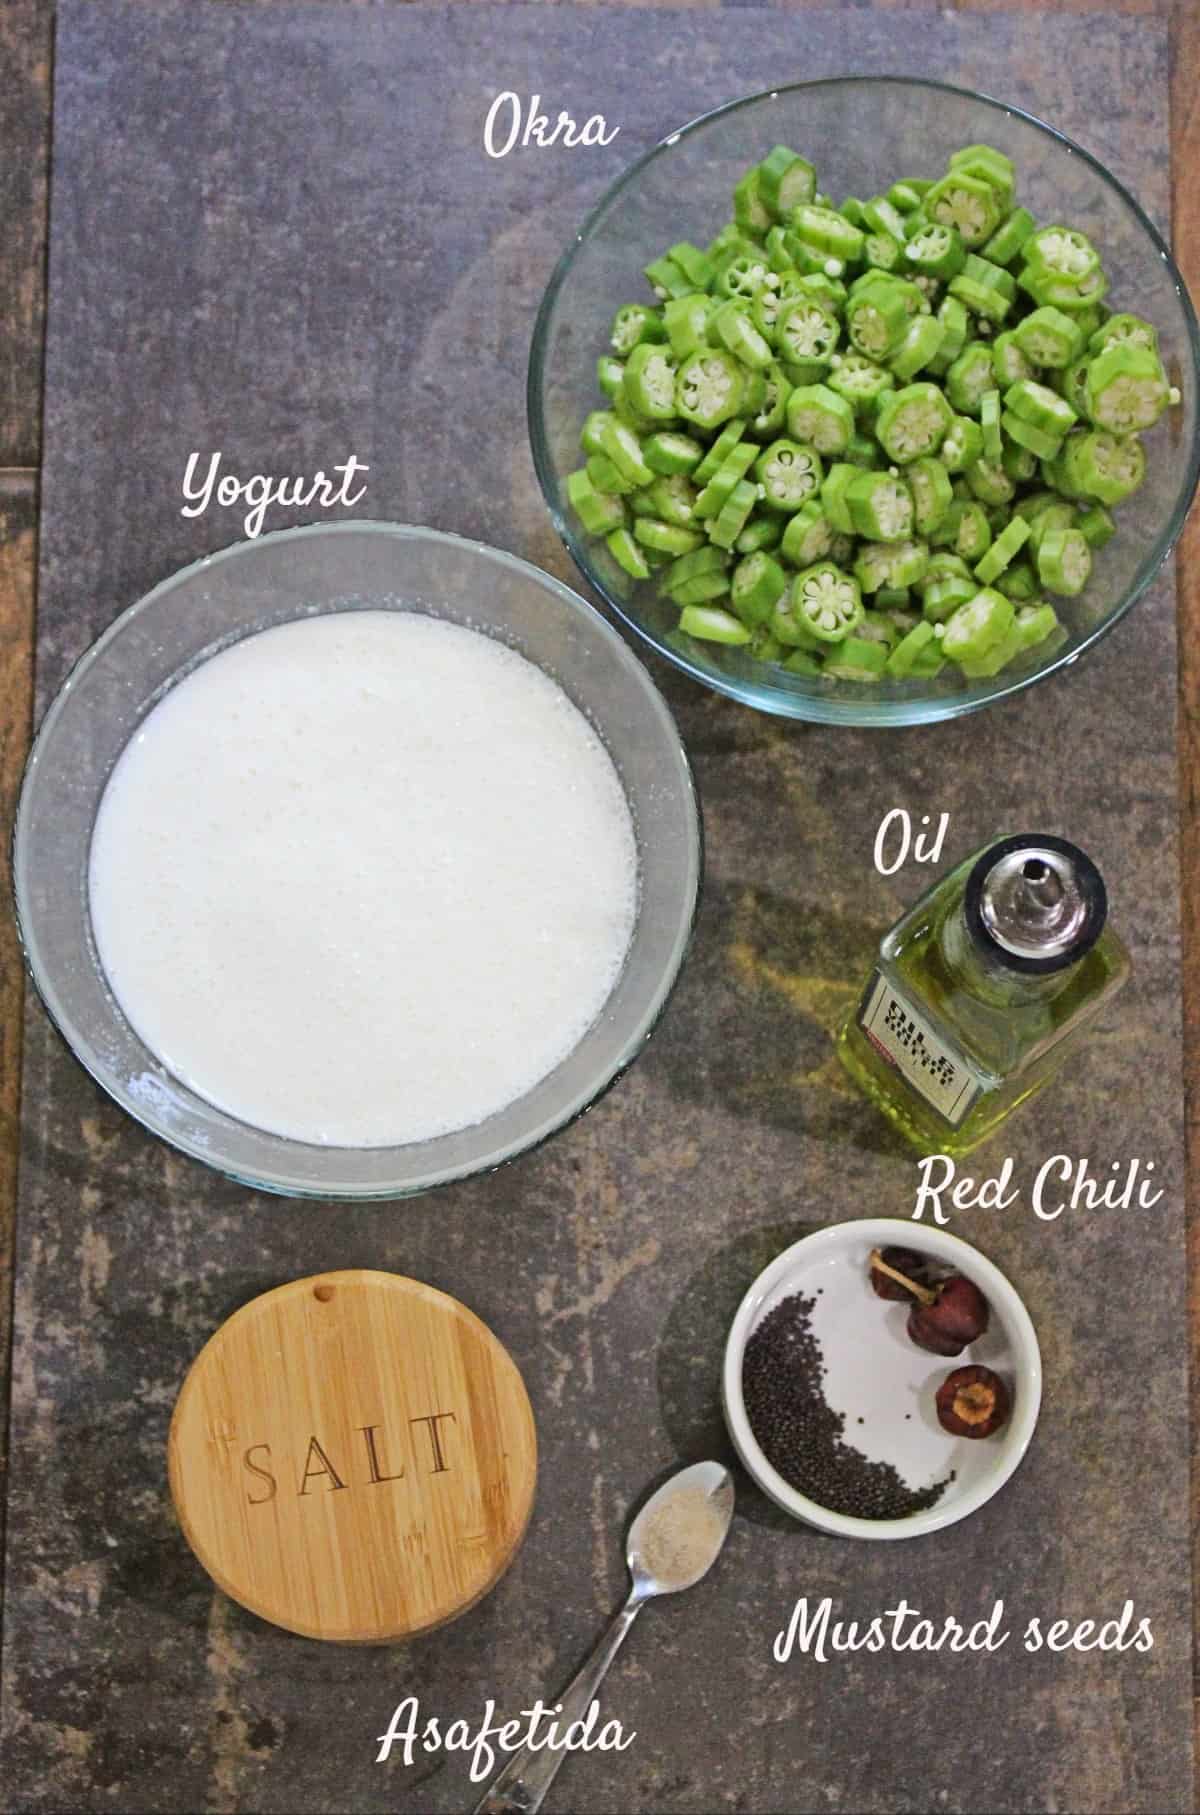 Ingredients to make okra raita